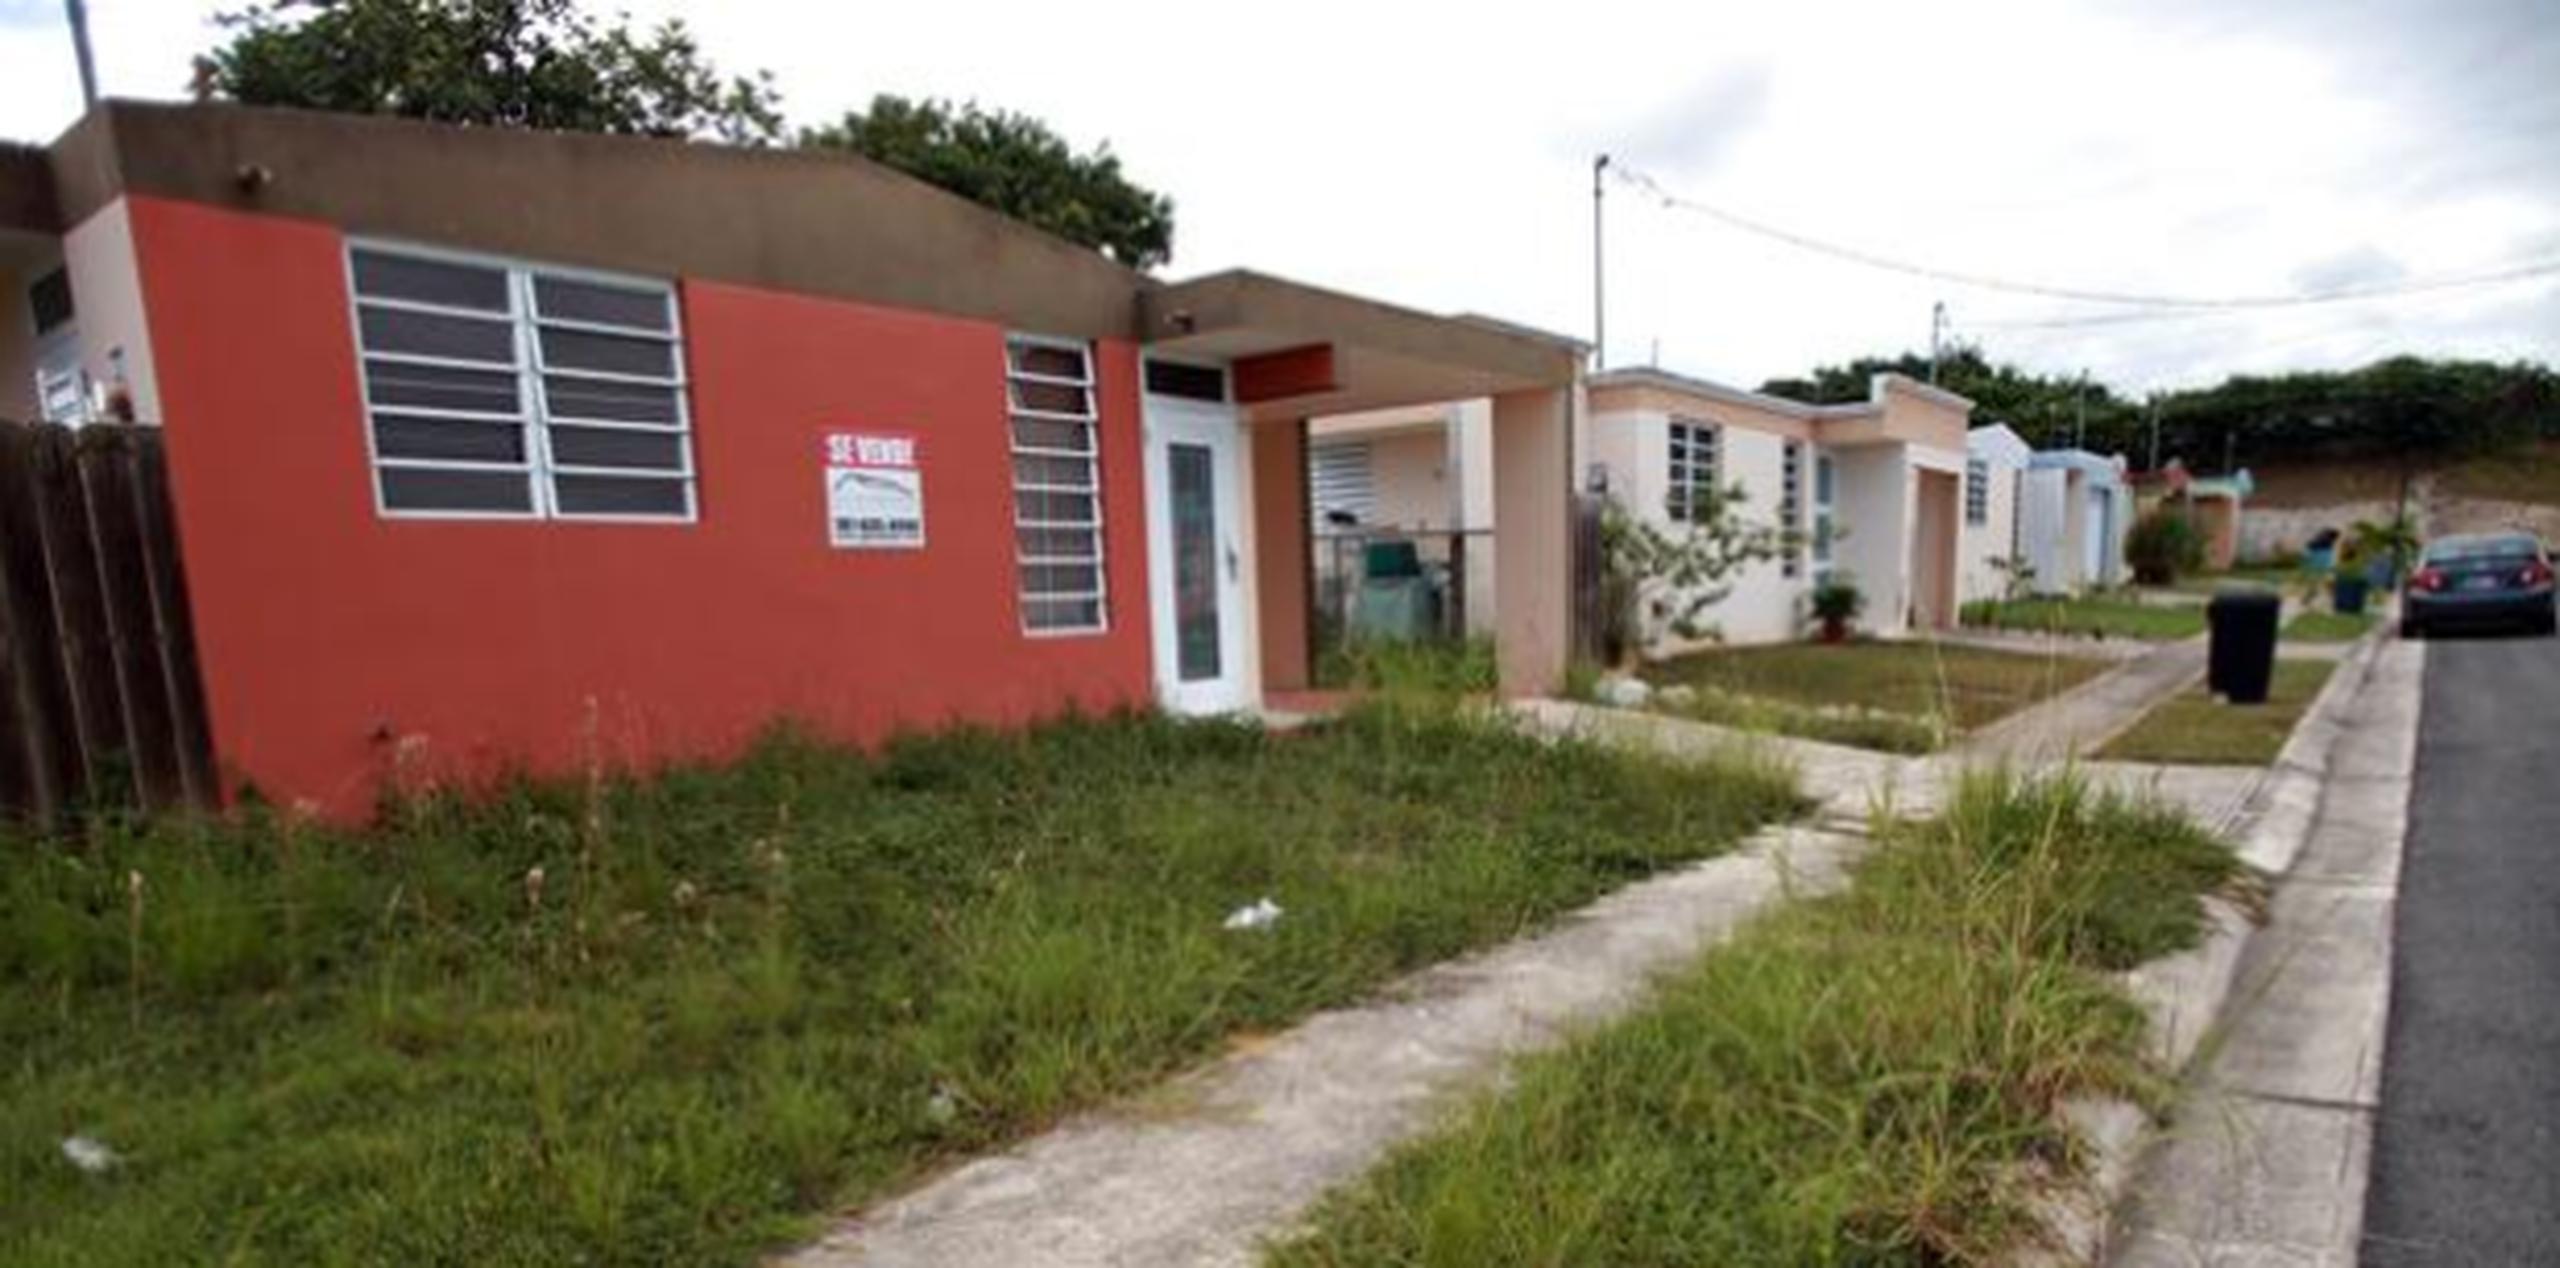 Unas 26,000 residencias han sido ejecutadas en los pasados 8 años en Puerto Rico, donde la tasa de morosidad es casi el triple a la de Estados Unidos, informó OCIF. (Archivo)